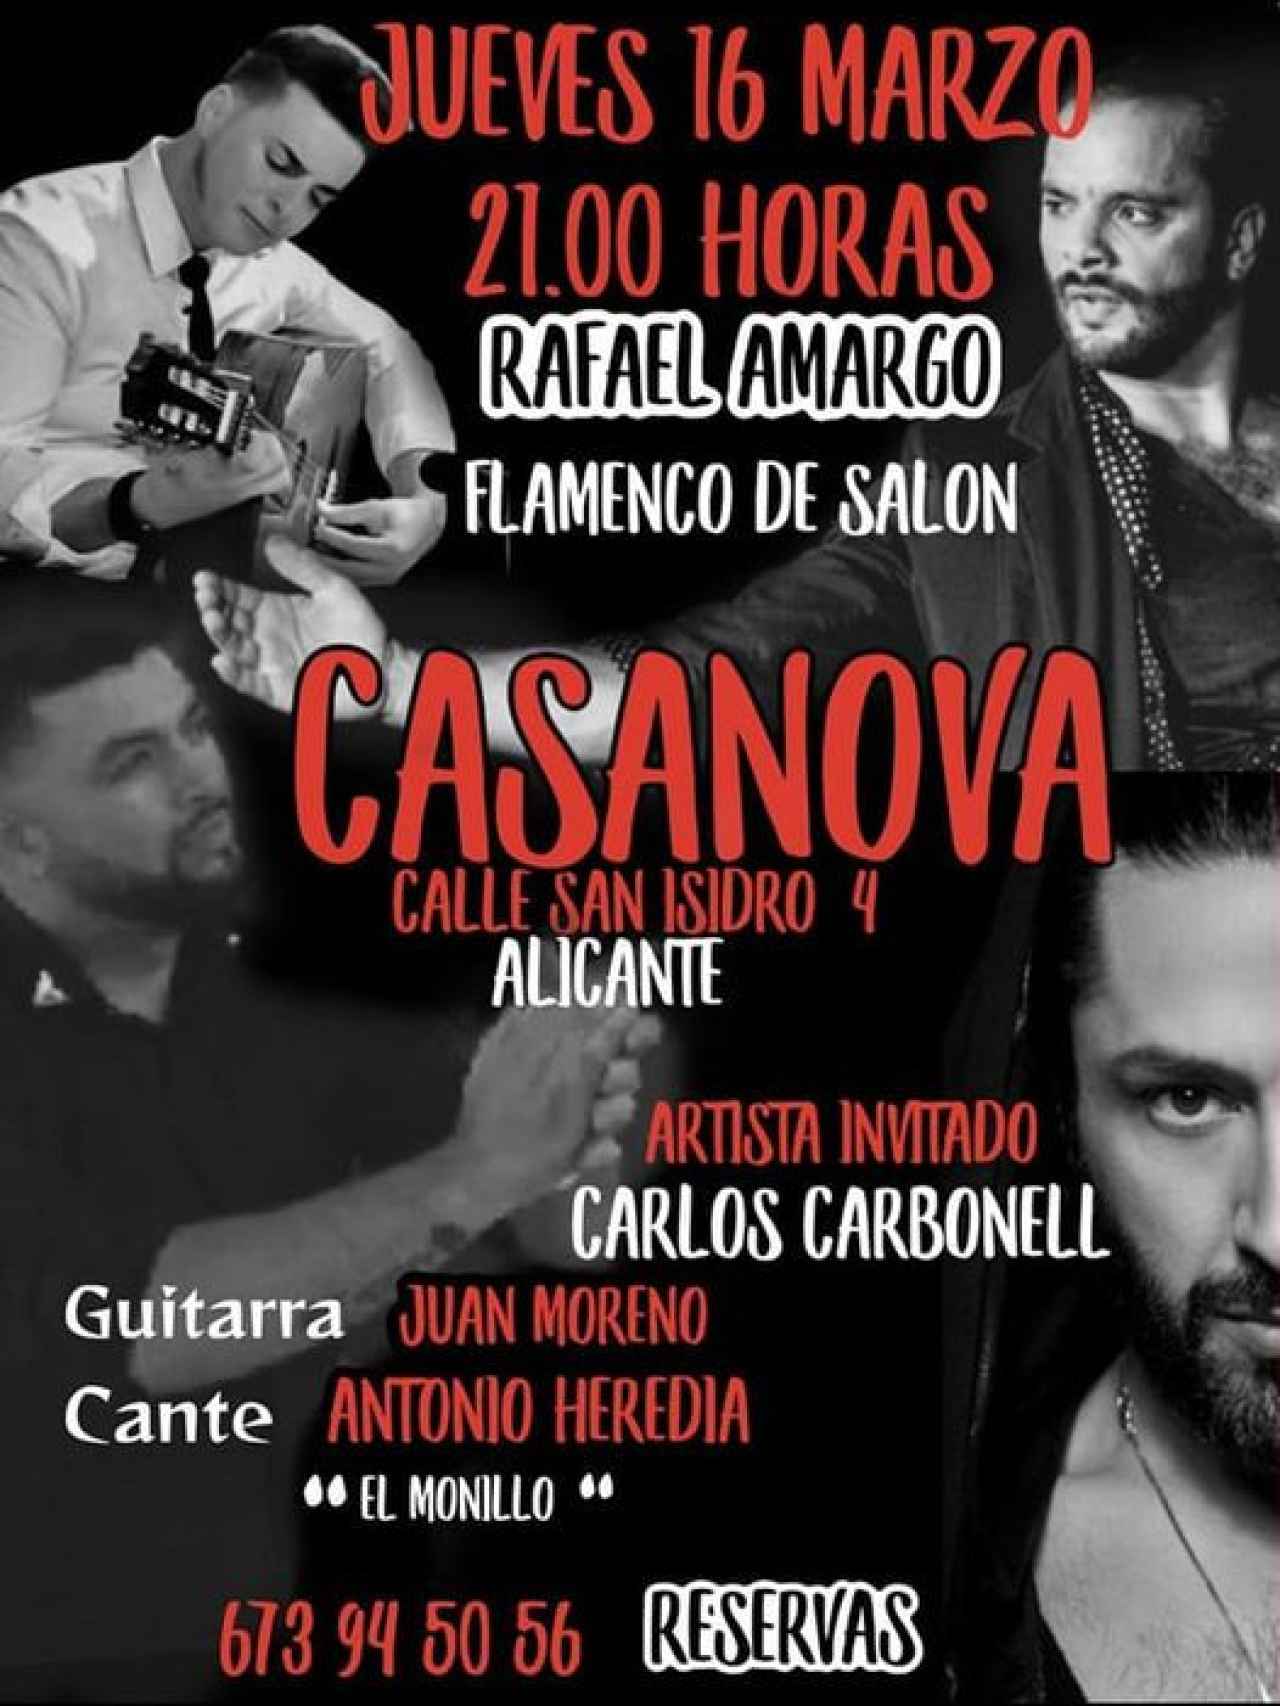 Cartel de la sala Casanova en el que se informaba de la actuación de Rafael Amargo.